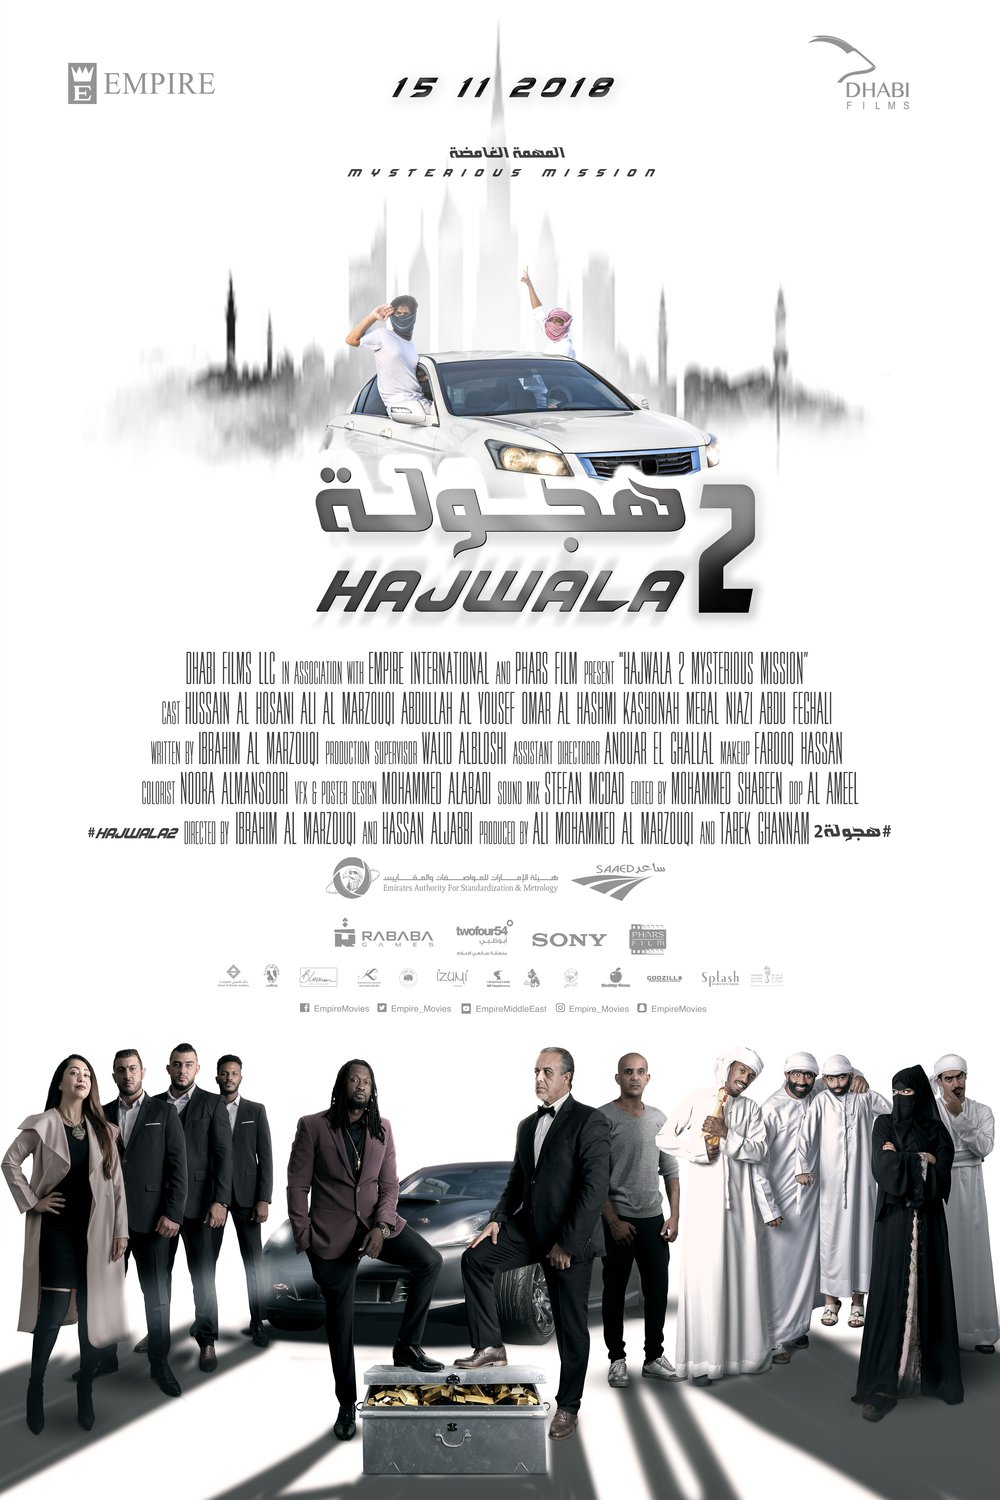 L'affiche originale du film Hajwala 2: Mysterious Mission en arabe